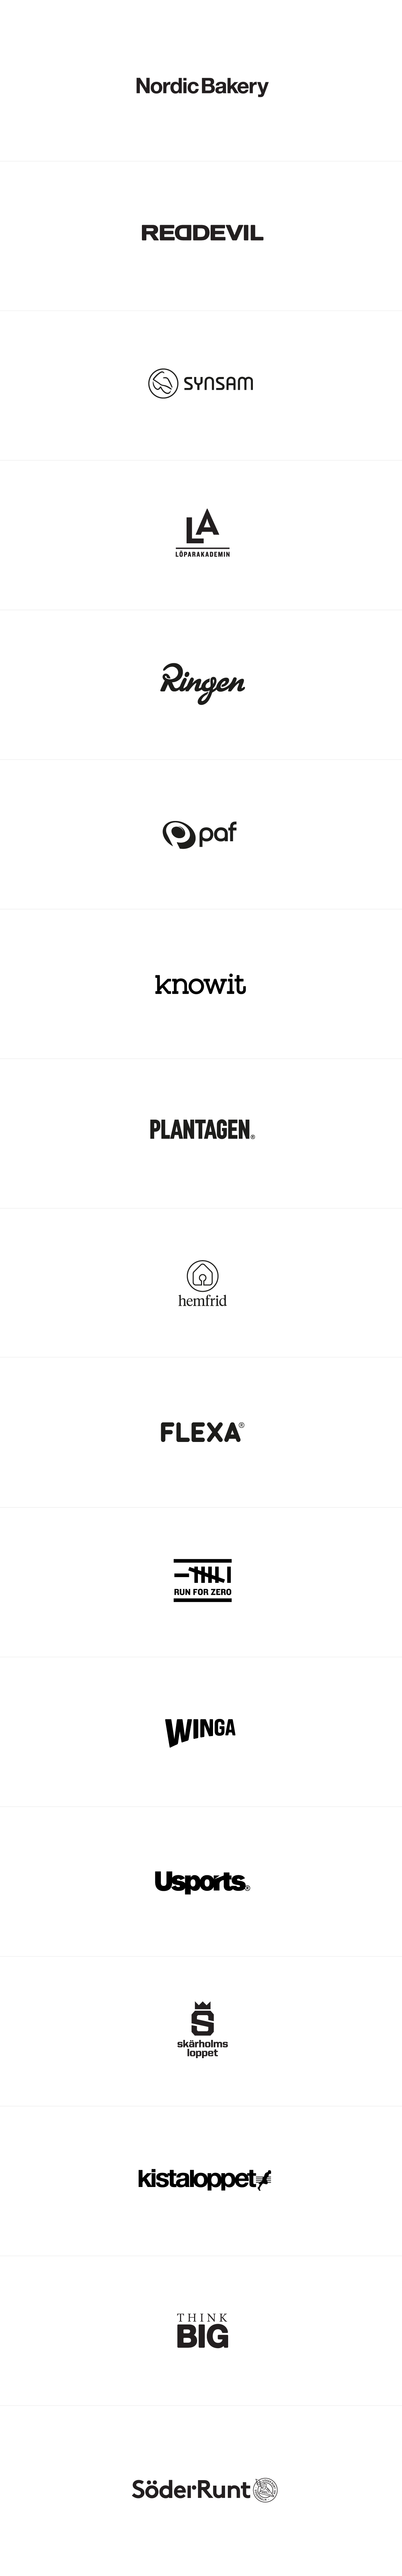 Various logos